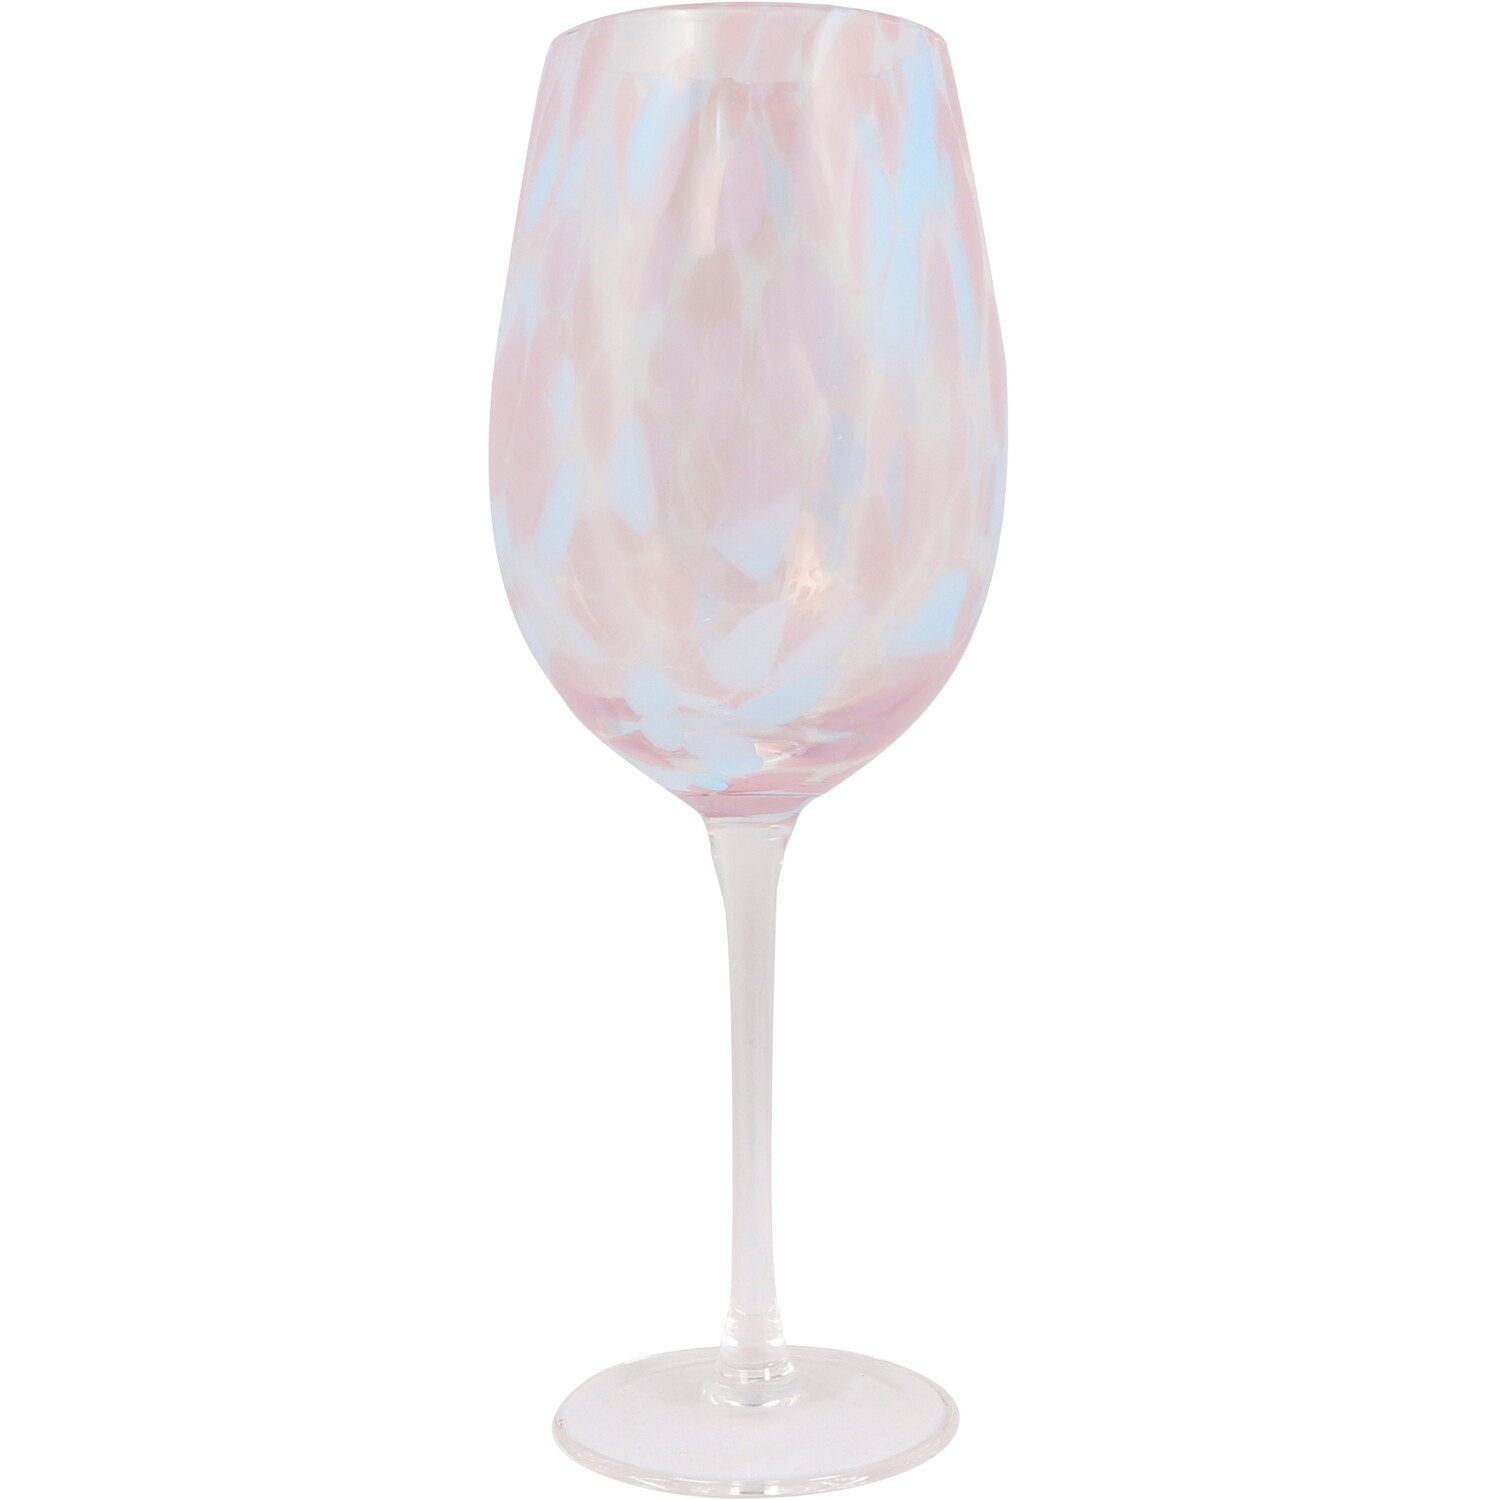 Confetti Multi Colour Wine Glass Image 1